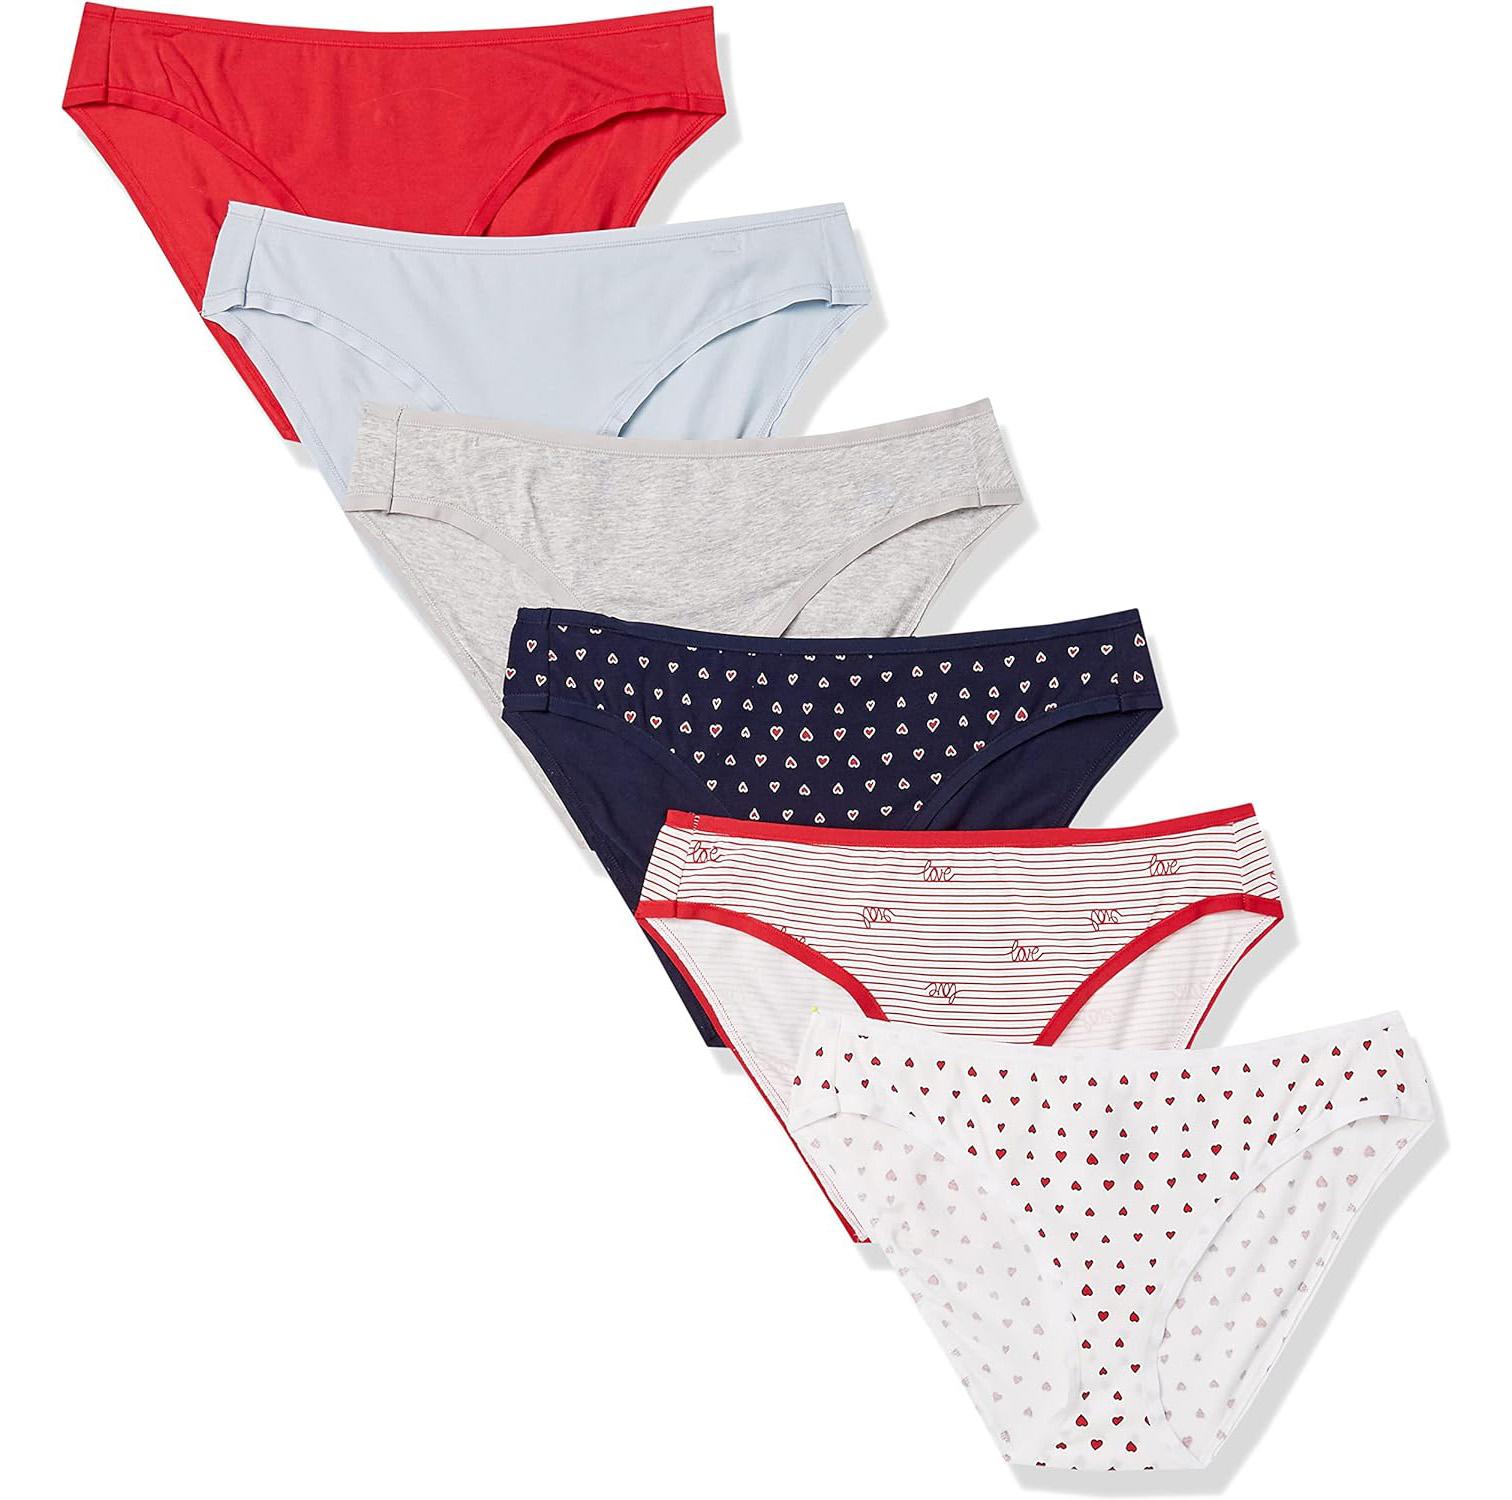 Amazon Essentials Womens Cotton Bikini Underwear 6 Pack for $4.70